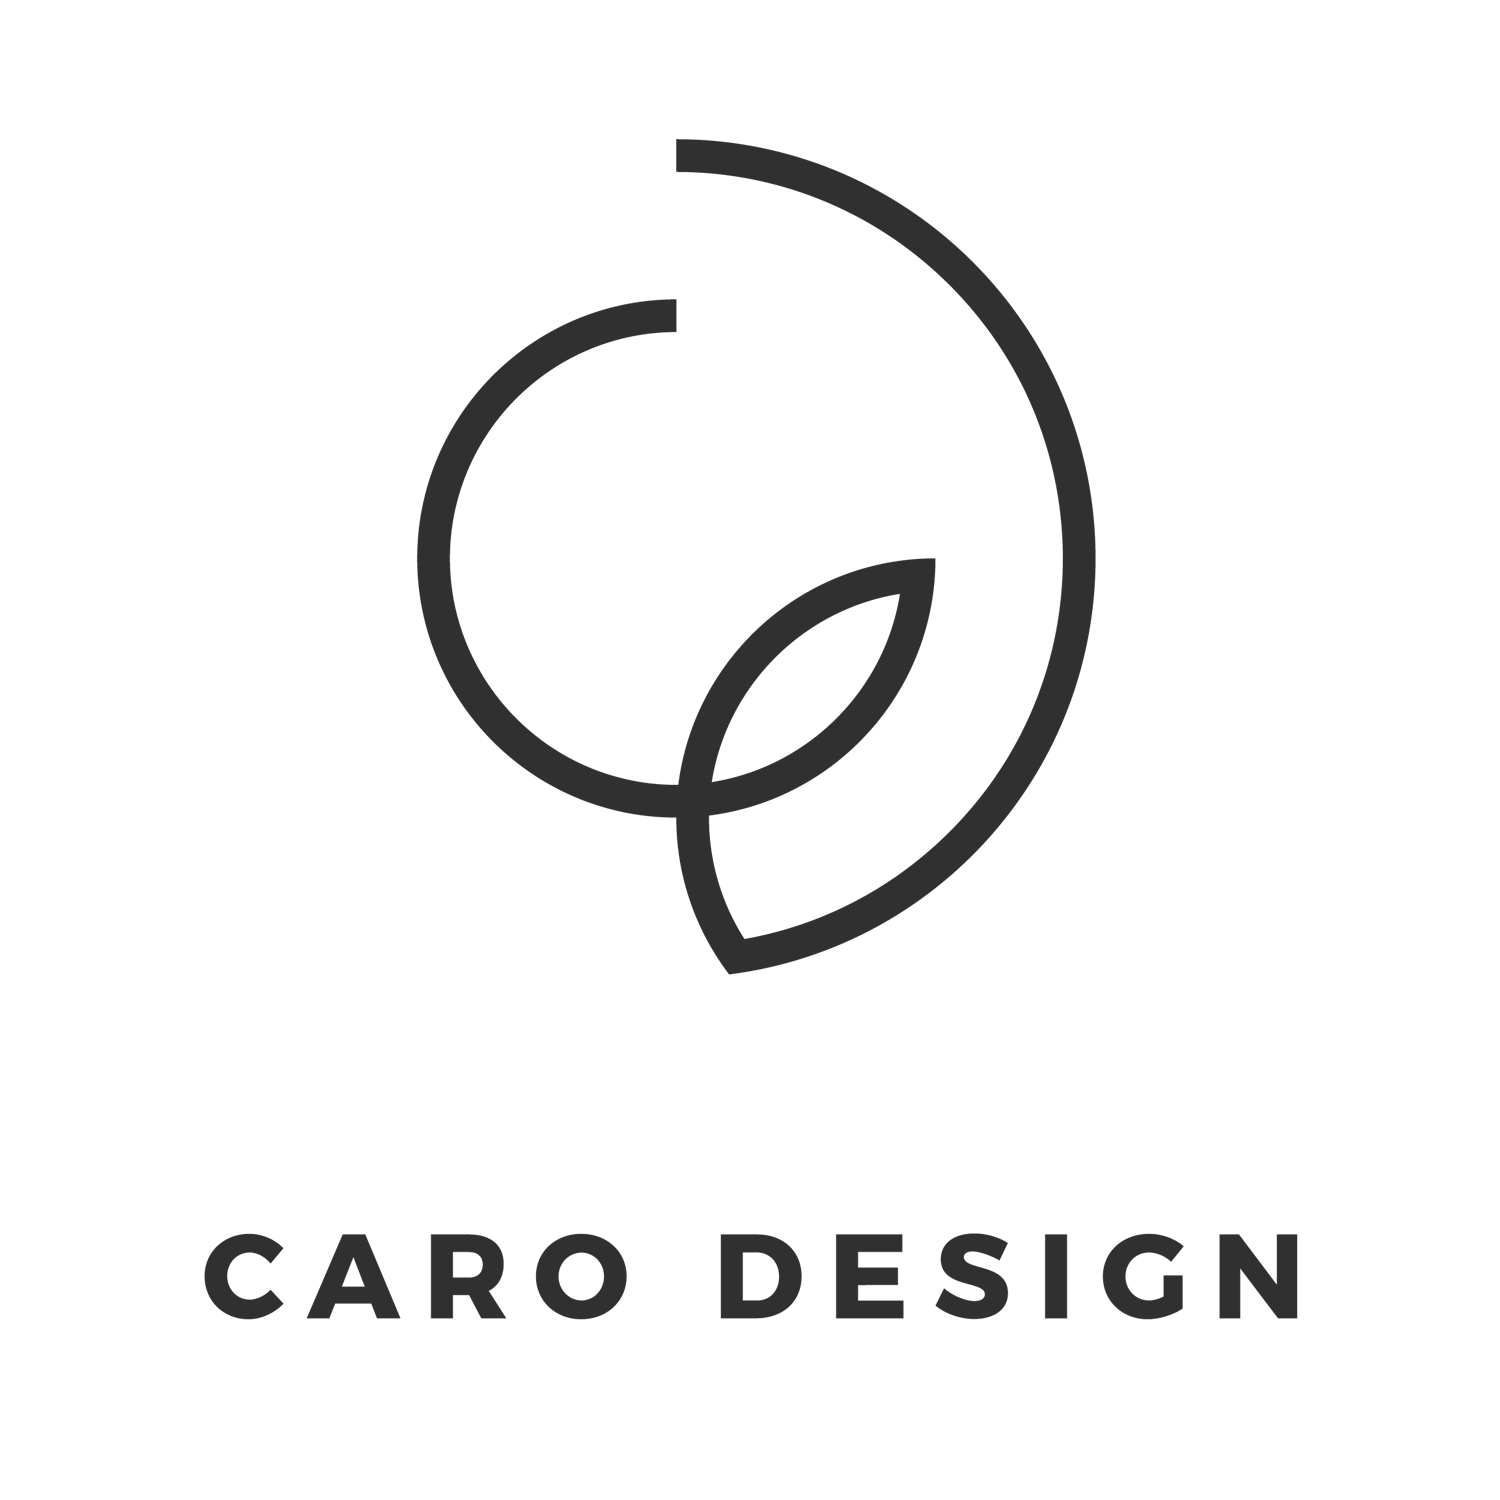 Caro Design